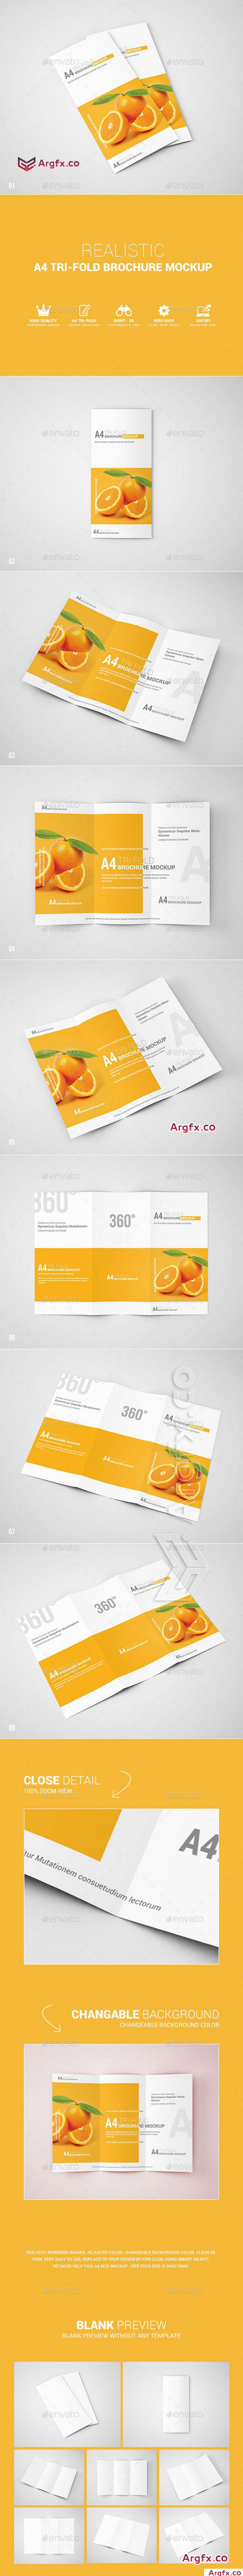  Graphicriver - A4 Tri-Fold Brochure Mockup 11292562